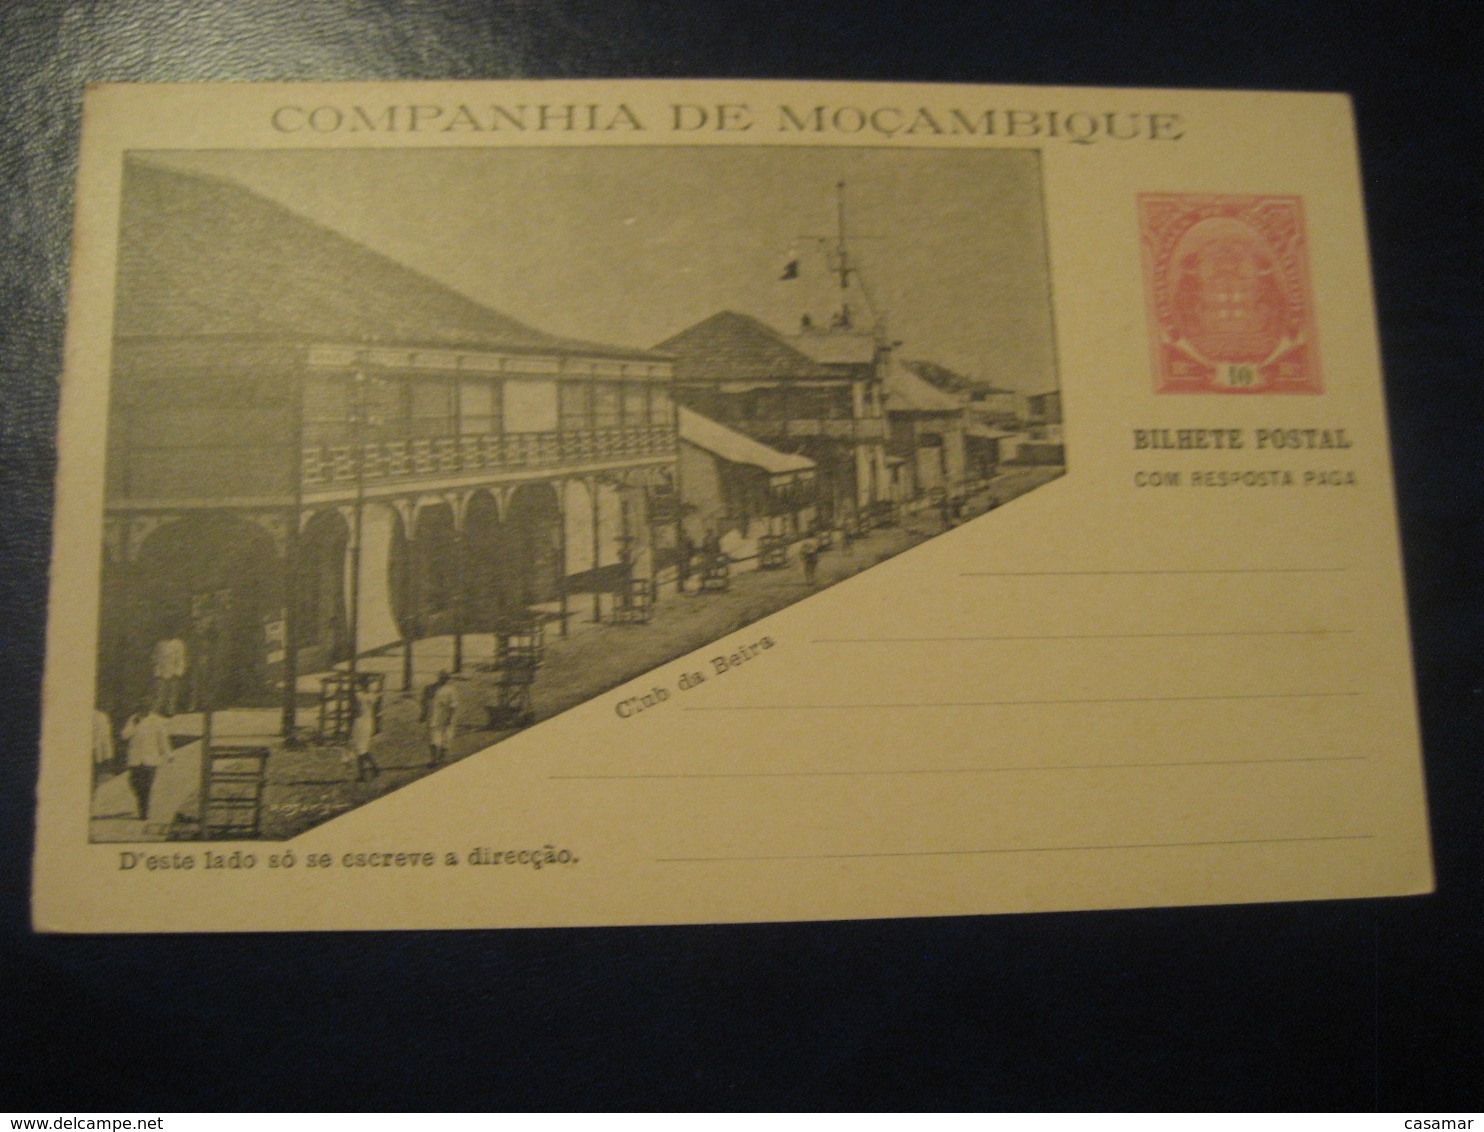 10+10 Reis Beira Club Bilhete Postal + Resposta Paga Companhia Moçambique MOZAMBIQUE Portugal Colonies Stationery - Mozambique